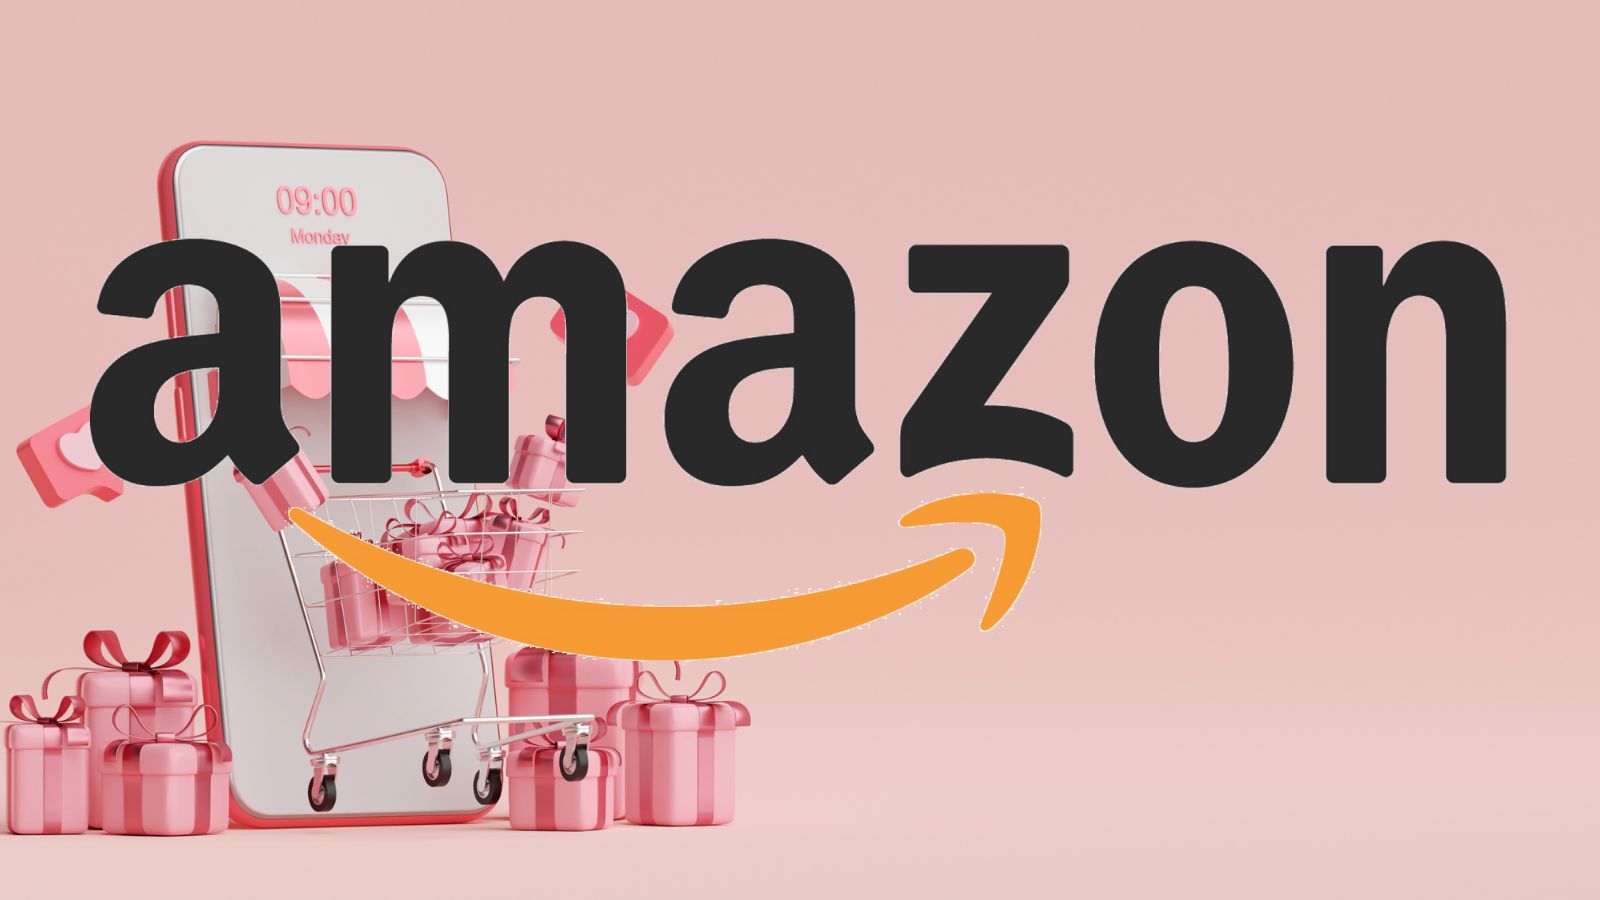 Amazon BOMBA: in regalo oggi TECNOLOGIA e SMARTPHONE